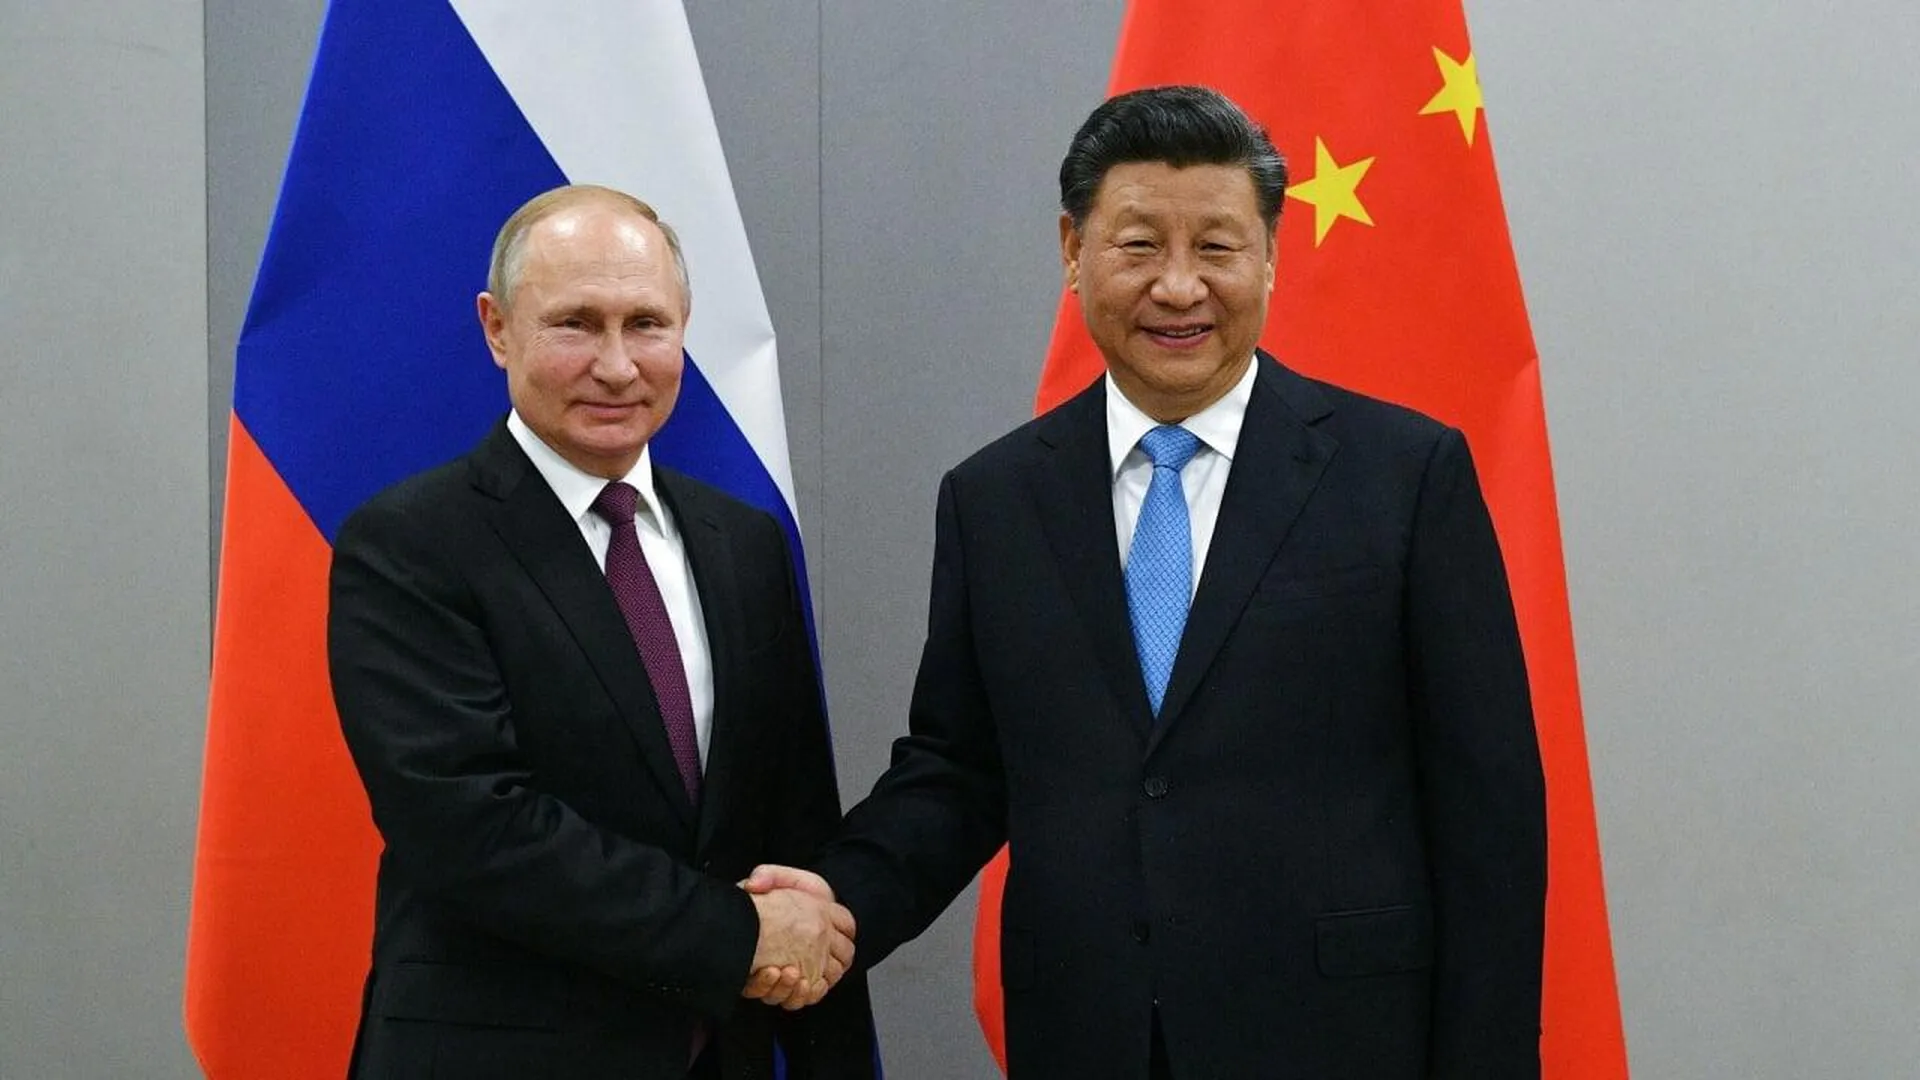 Политолог Маркелов перечислил посланные Владимиром Путиным и Си Цзиньпином сигналы Западу